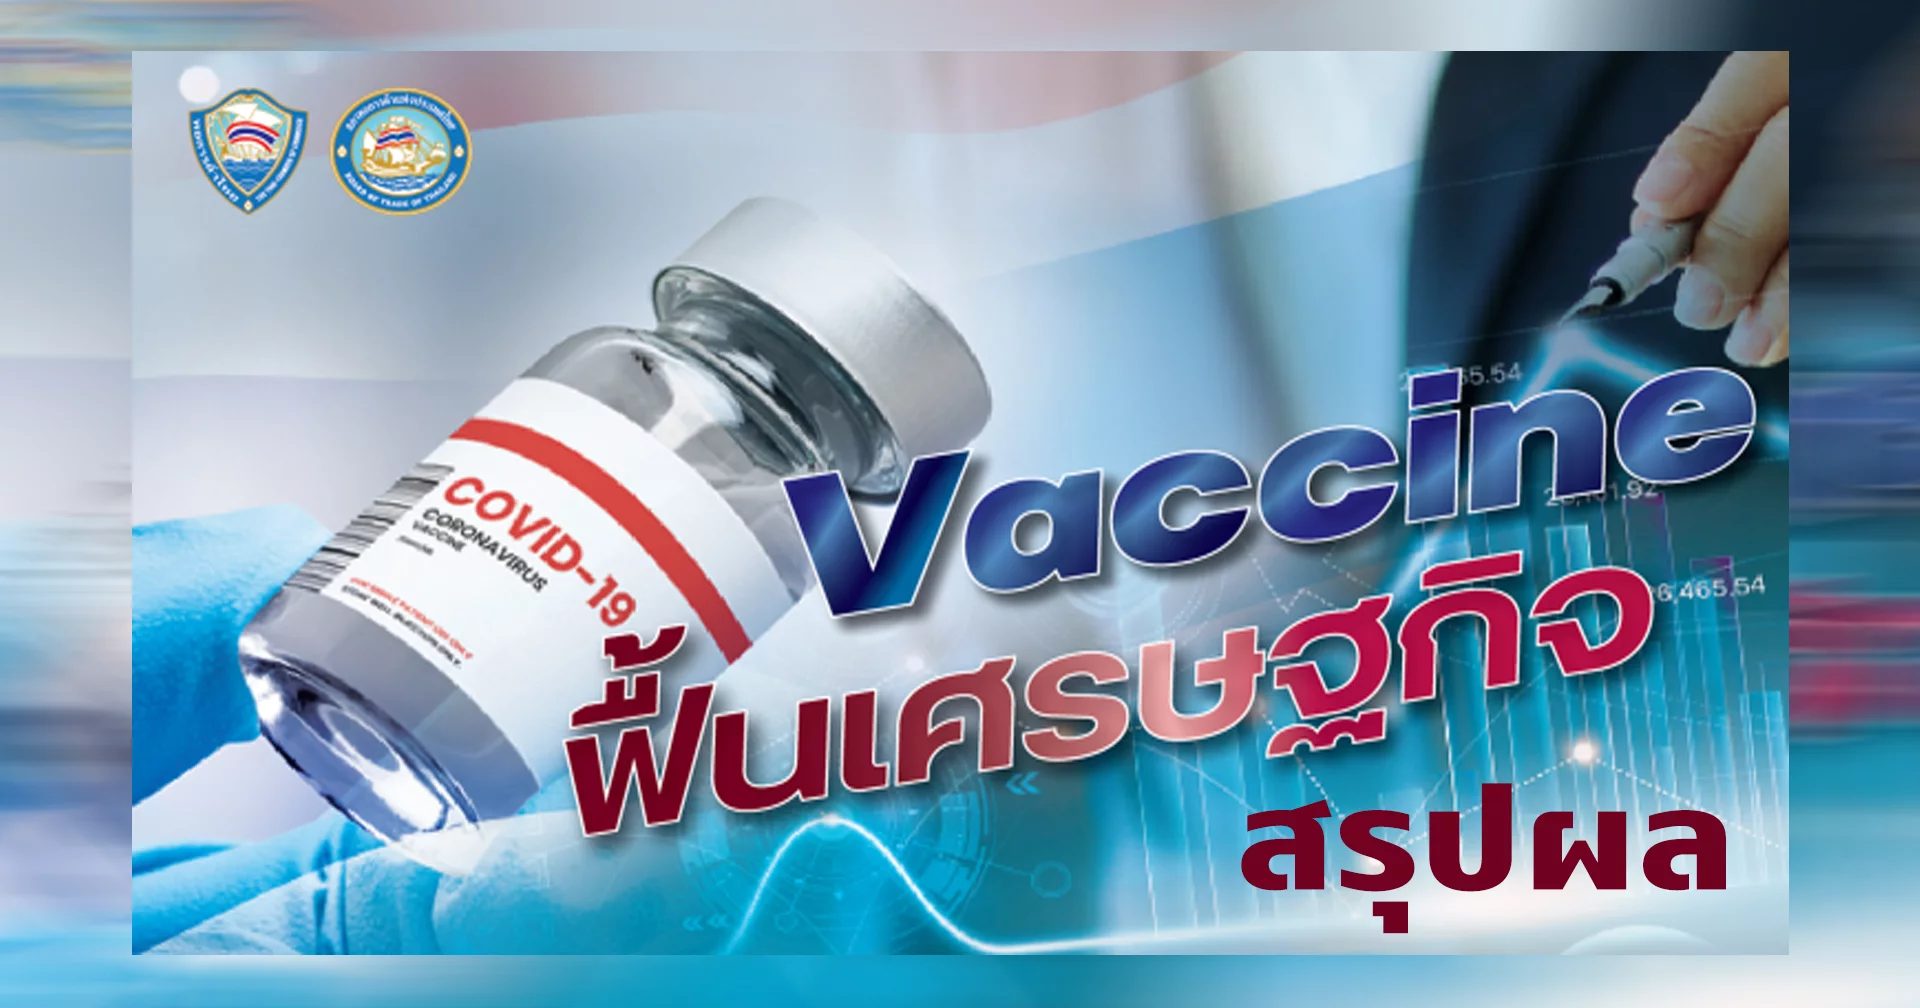 หอการค้าไทยถูกเบรคแผนให้เอกชนนำวัคซีนเข้ามาฉีดเอง พร้อมคุยนายกสนับสนุนแผนวัคซีนรัฐ